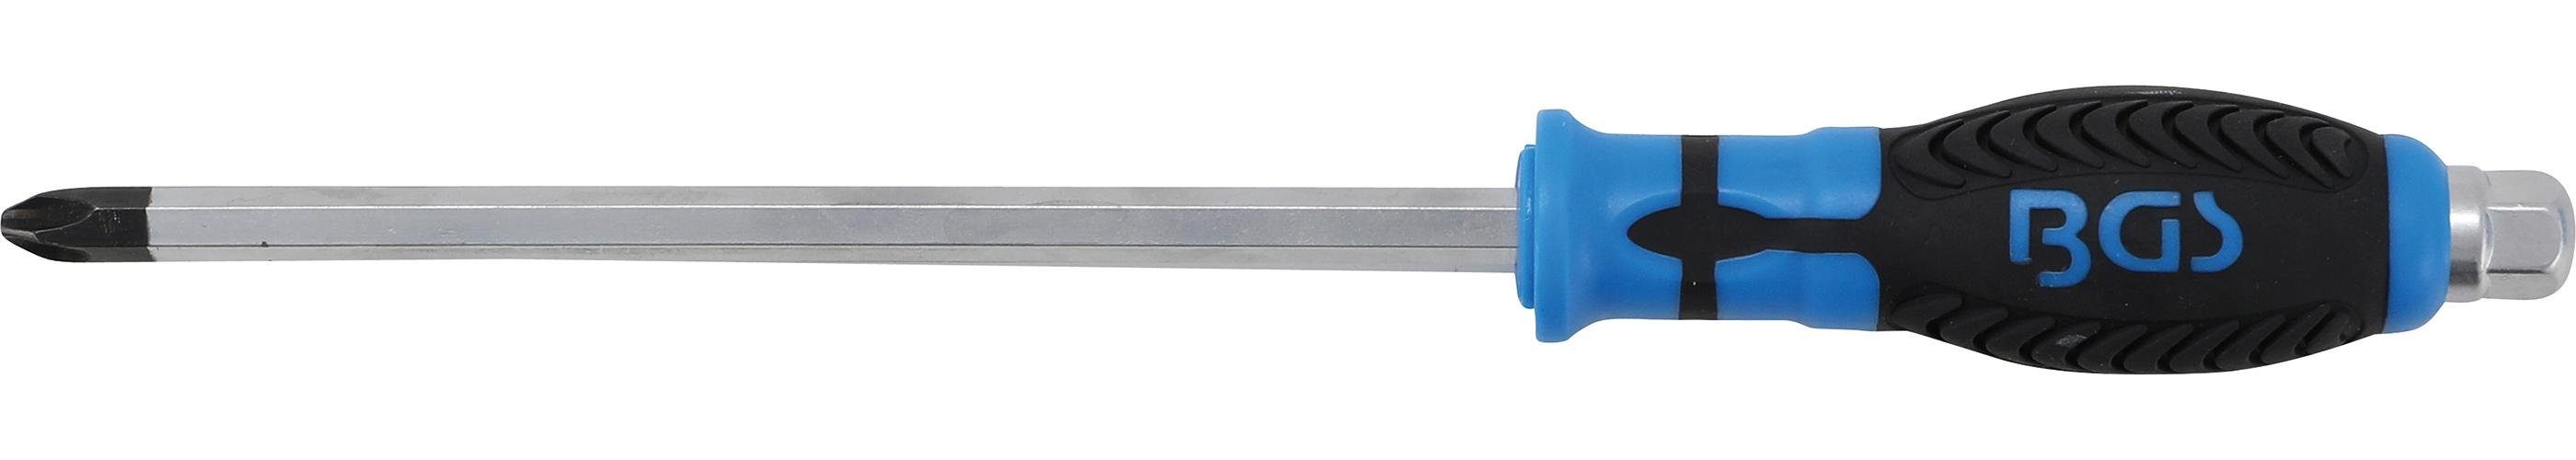 BGS technic Bit-Schraubendreher Schraubendreher, Klinge mit Sechskant-Profil, Kreuzschlitz PH4, Klingenlänge 200 mm